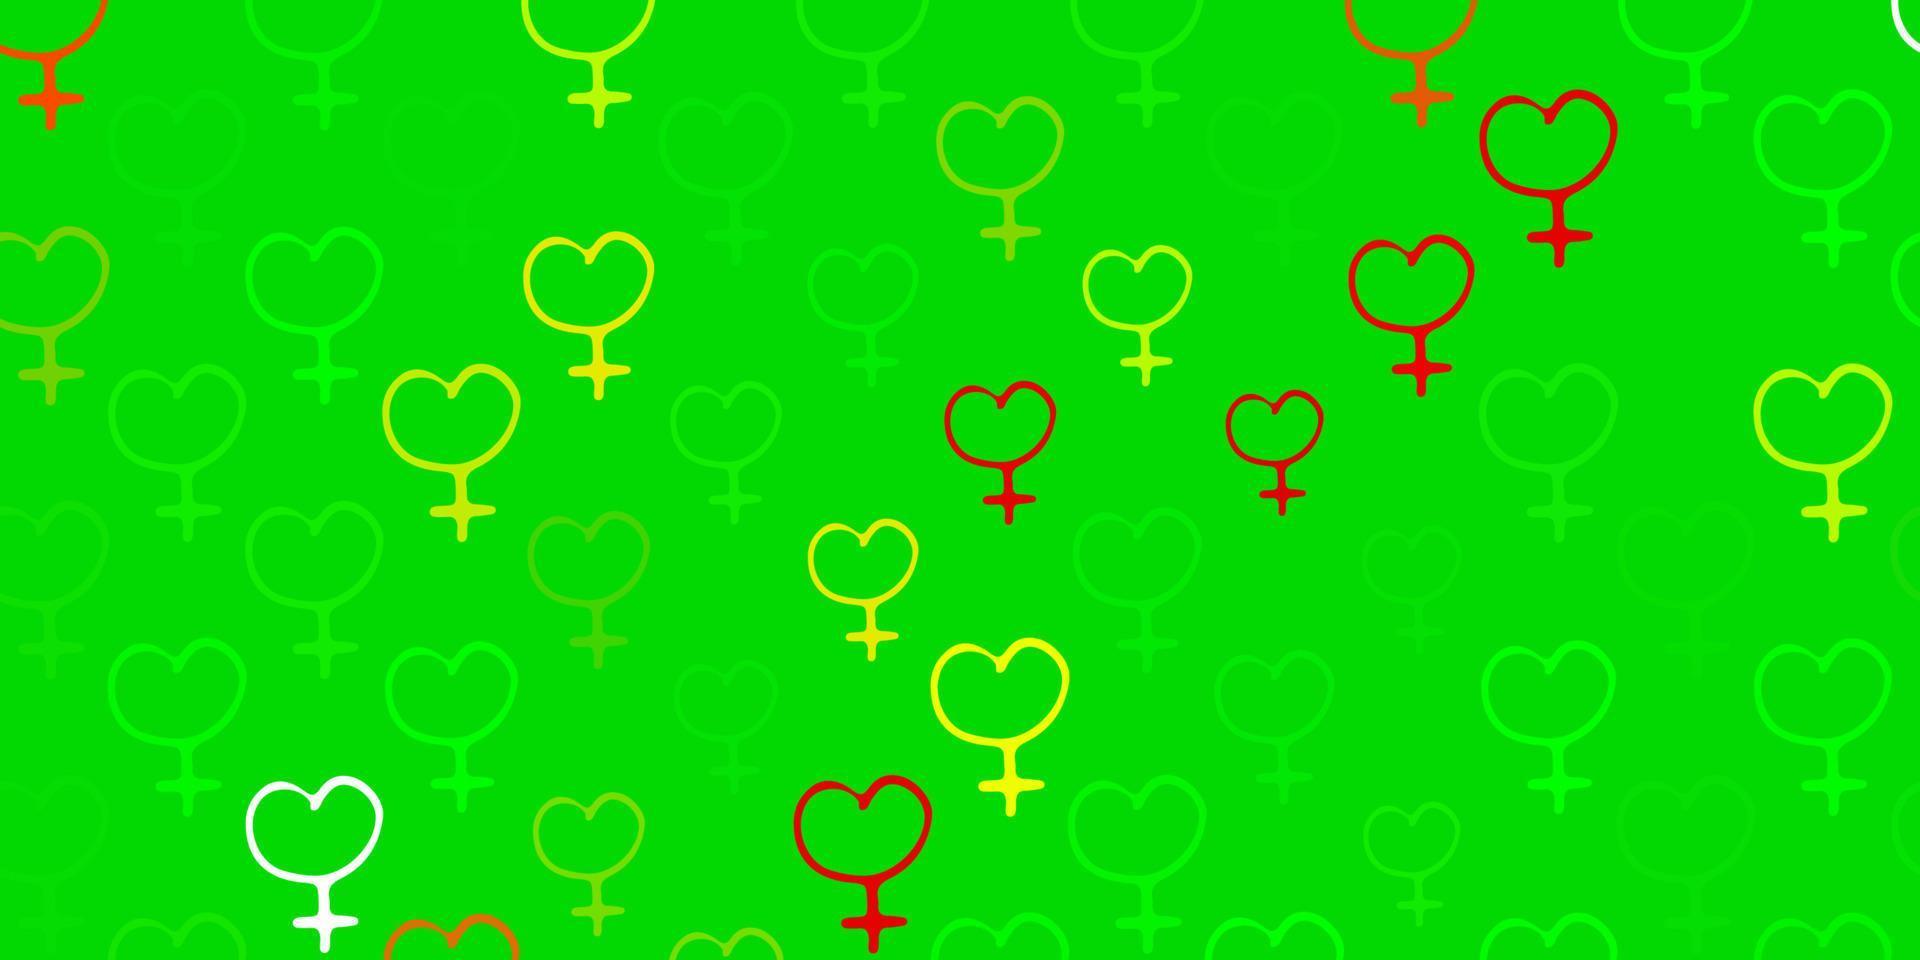 ljusgrön, röd vektorstruktur med symboler för kvinnors rättigheter. vektor